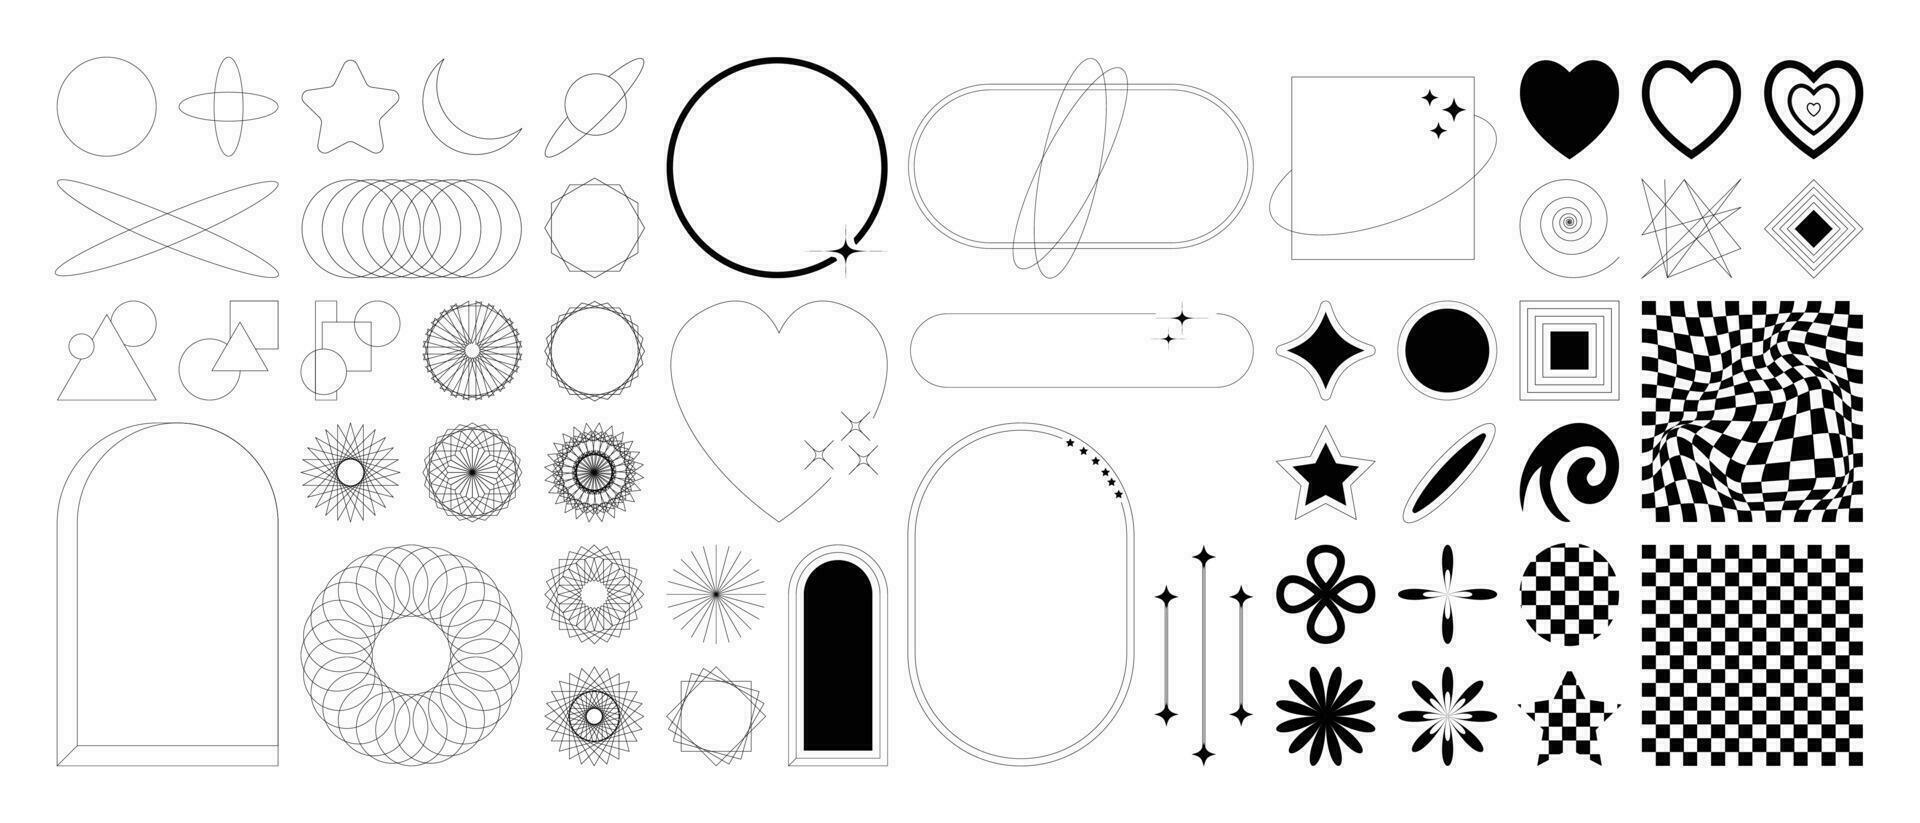 uppsättning av geometrisk former i trendig 90s stil. svart trendig design med ram, gnistrar, cirkel, hjärta, måne, rader. y2k estetisk element illustrerade för banderoller, social media, affisch design, klistermärke. vektor